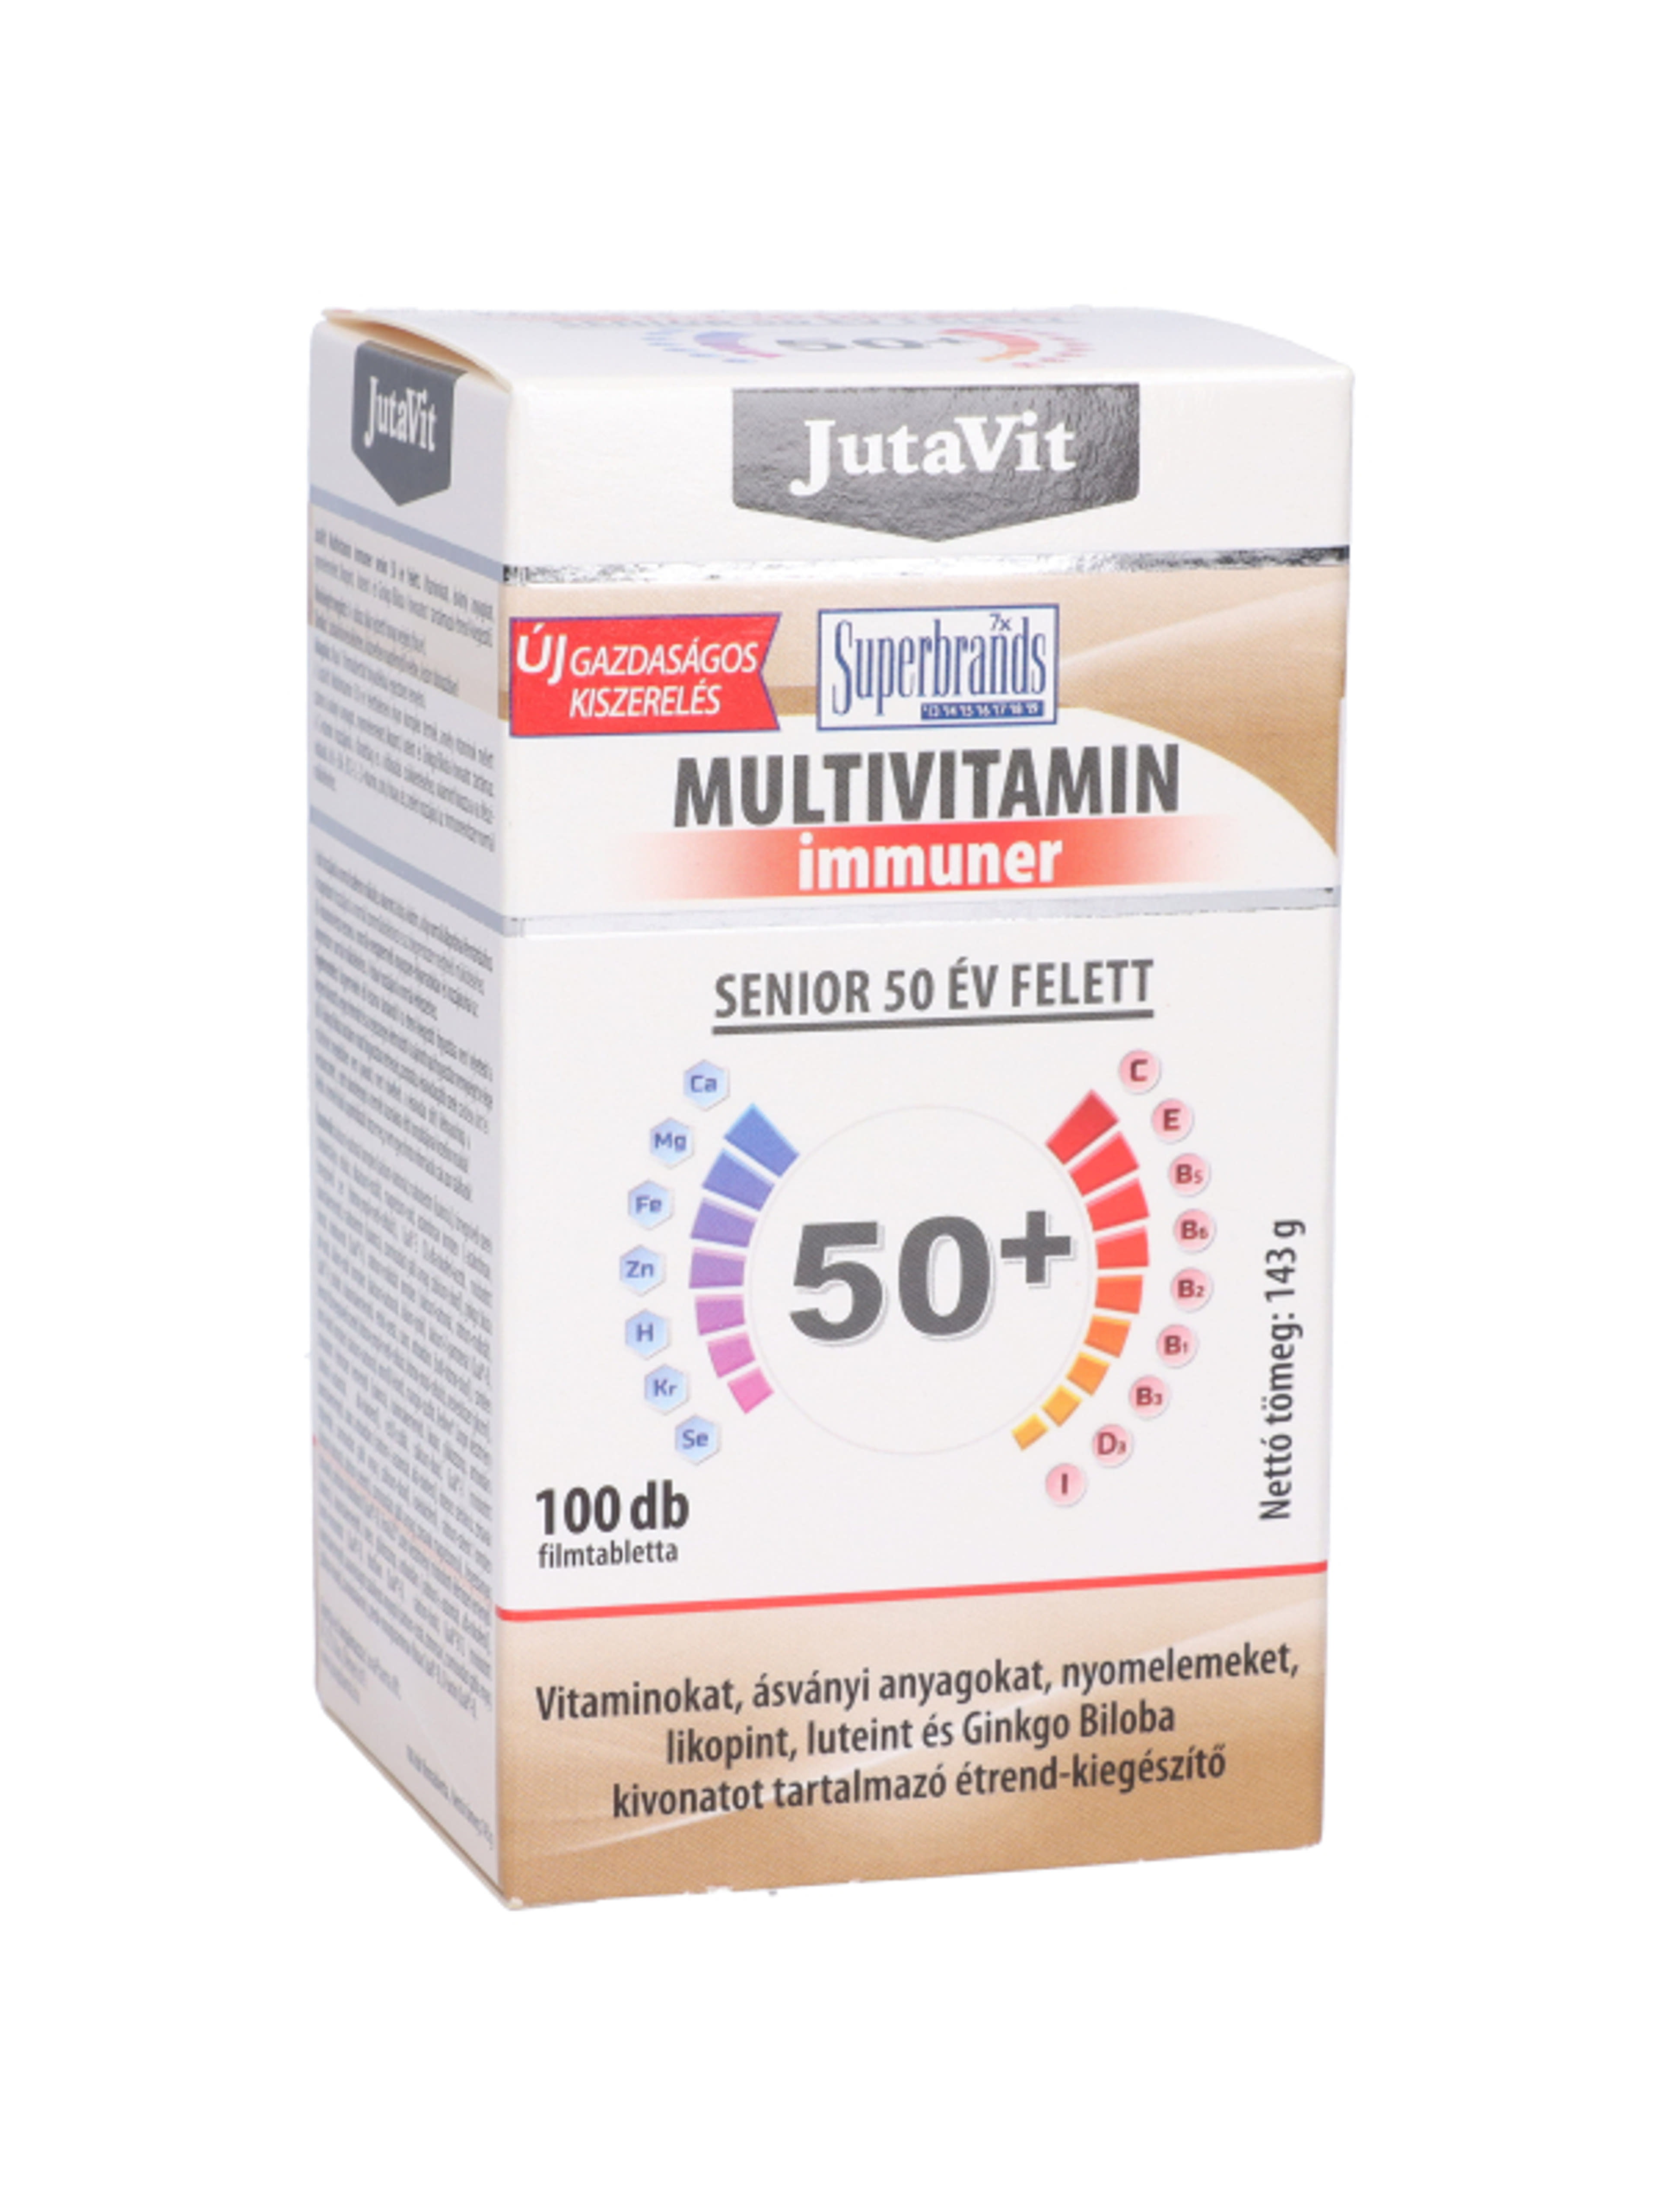 Jutavit multivitamin immunerősítő senior 50 év felett - 100 db